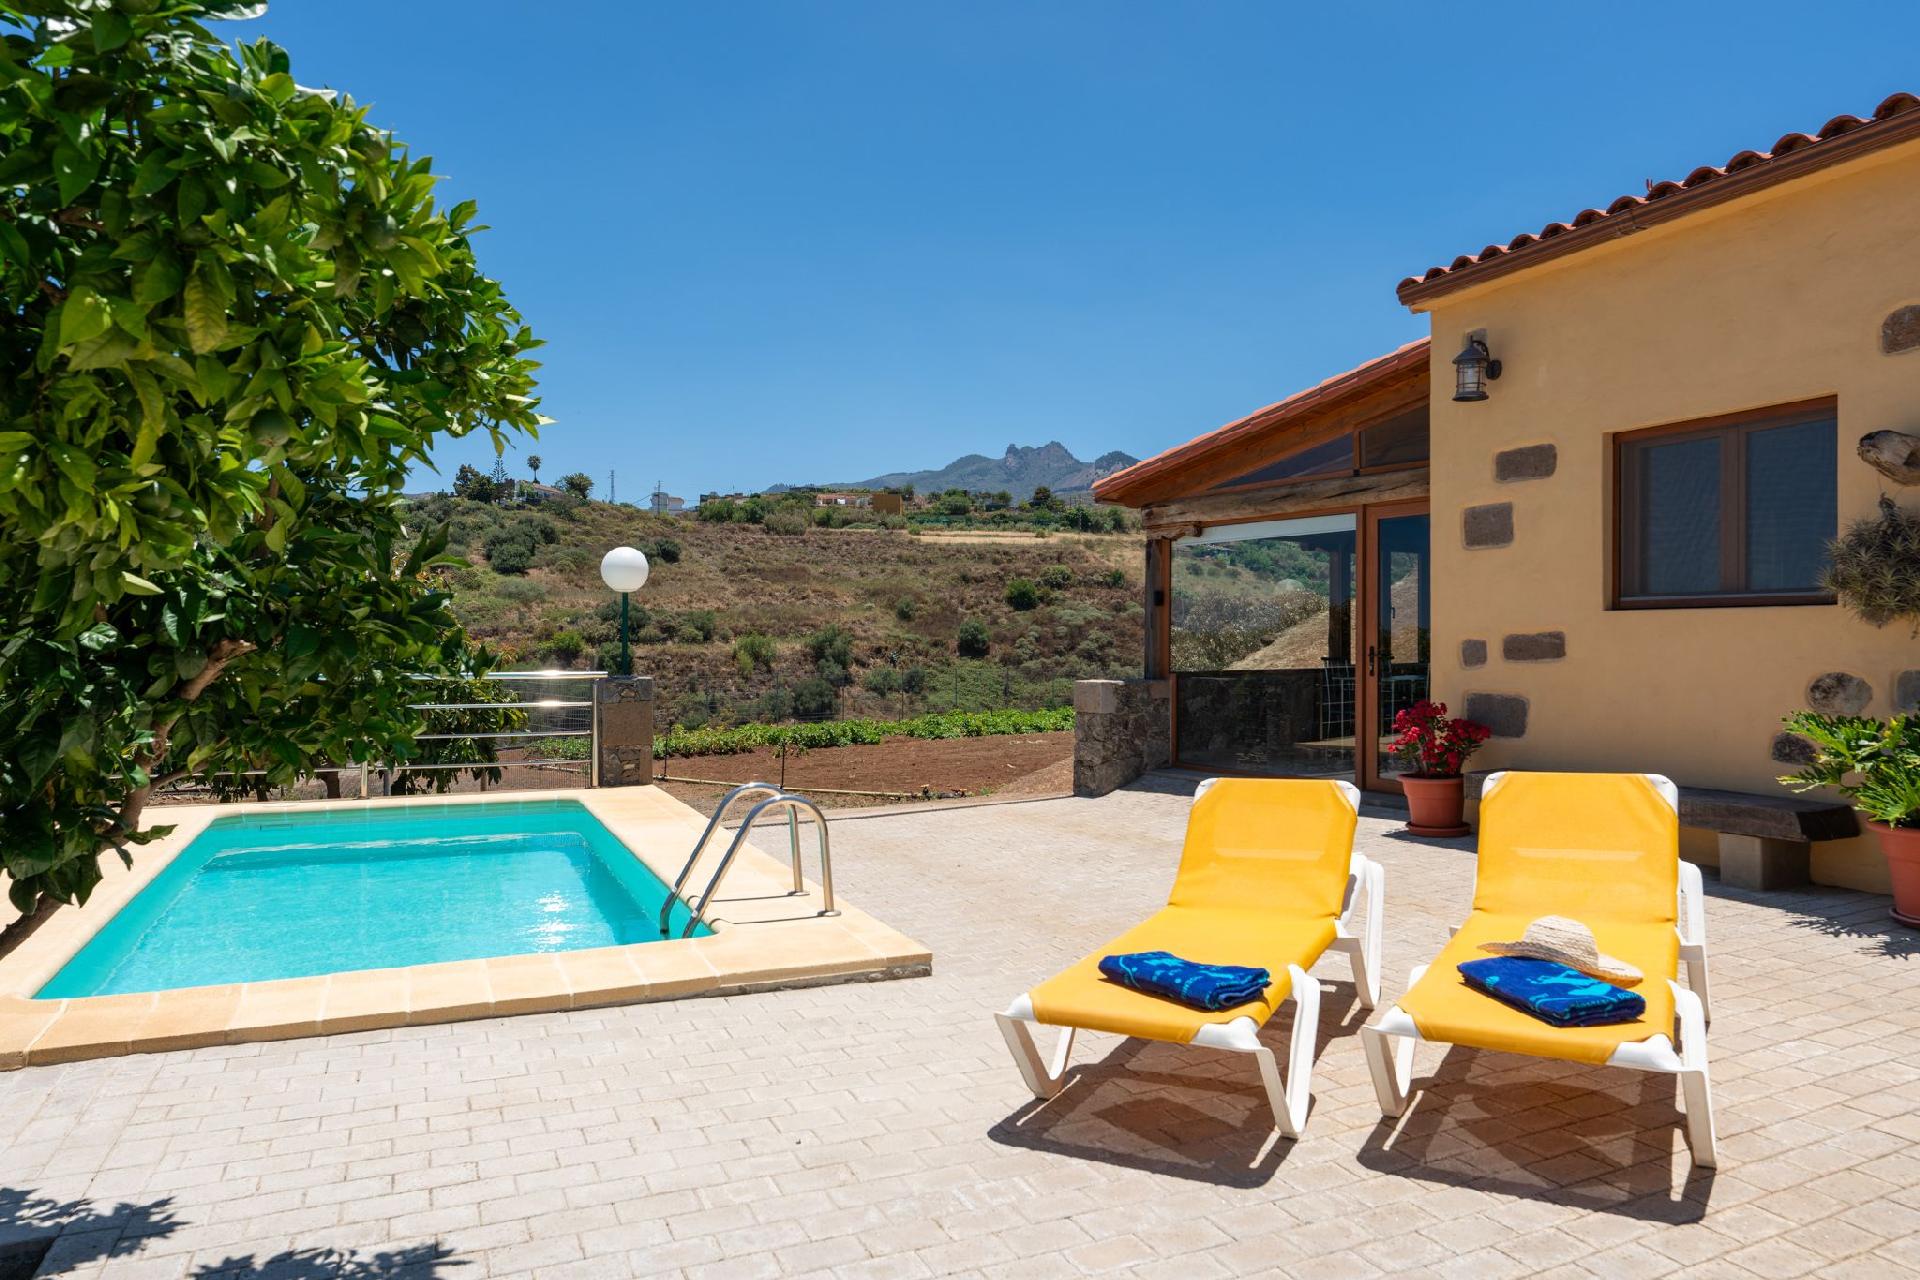 Ferienhaus mit Privatpool für 3 Personen  + 1 Ferienhaus in Spanien